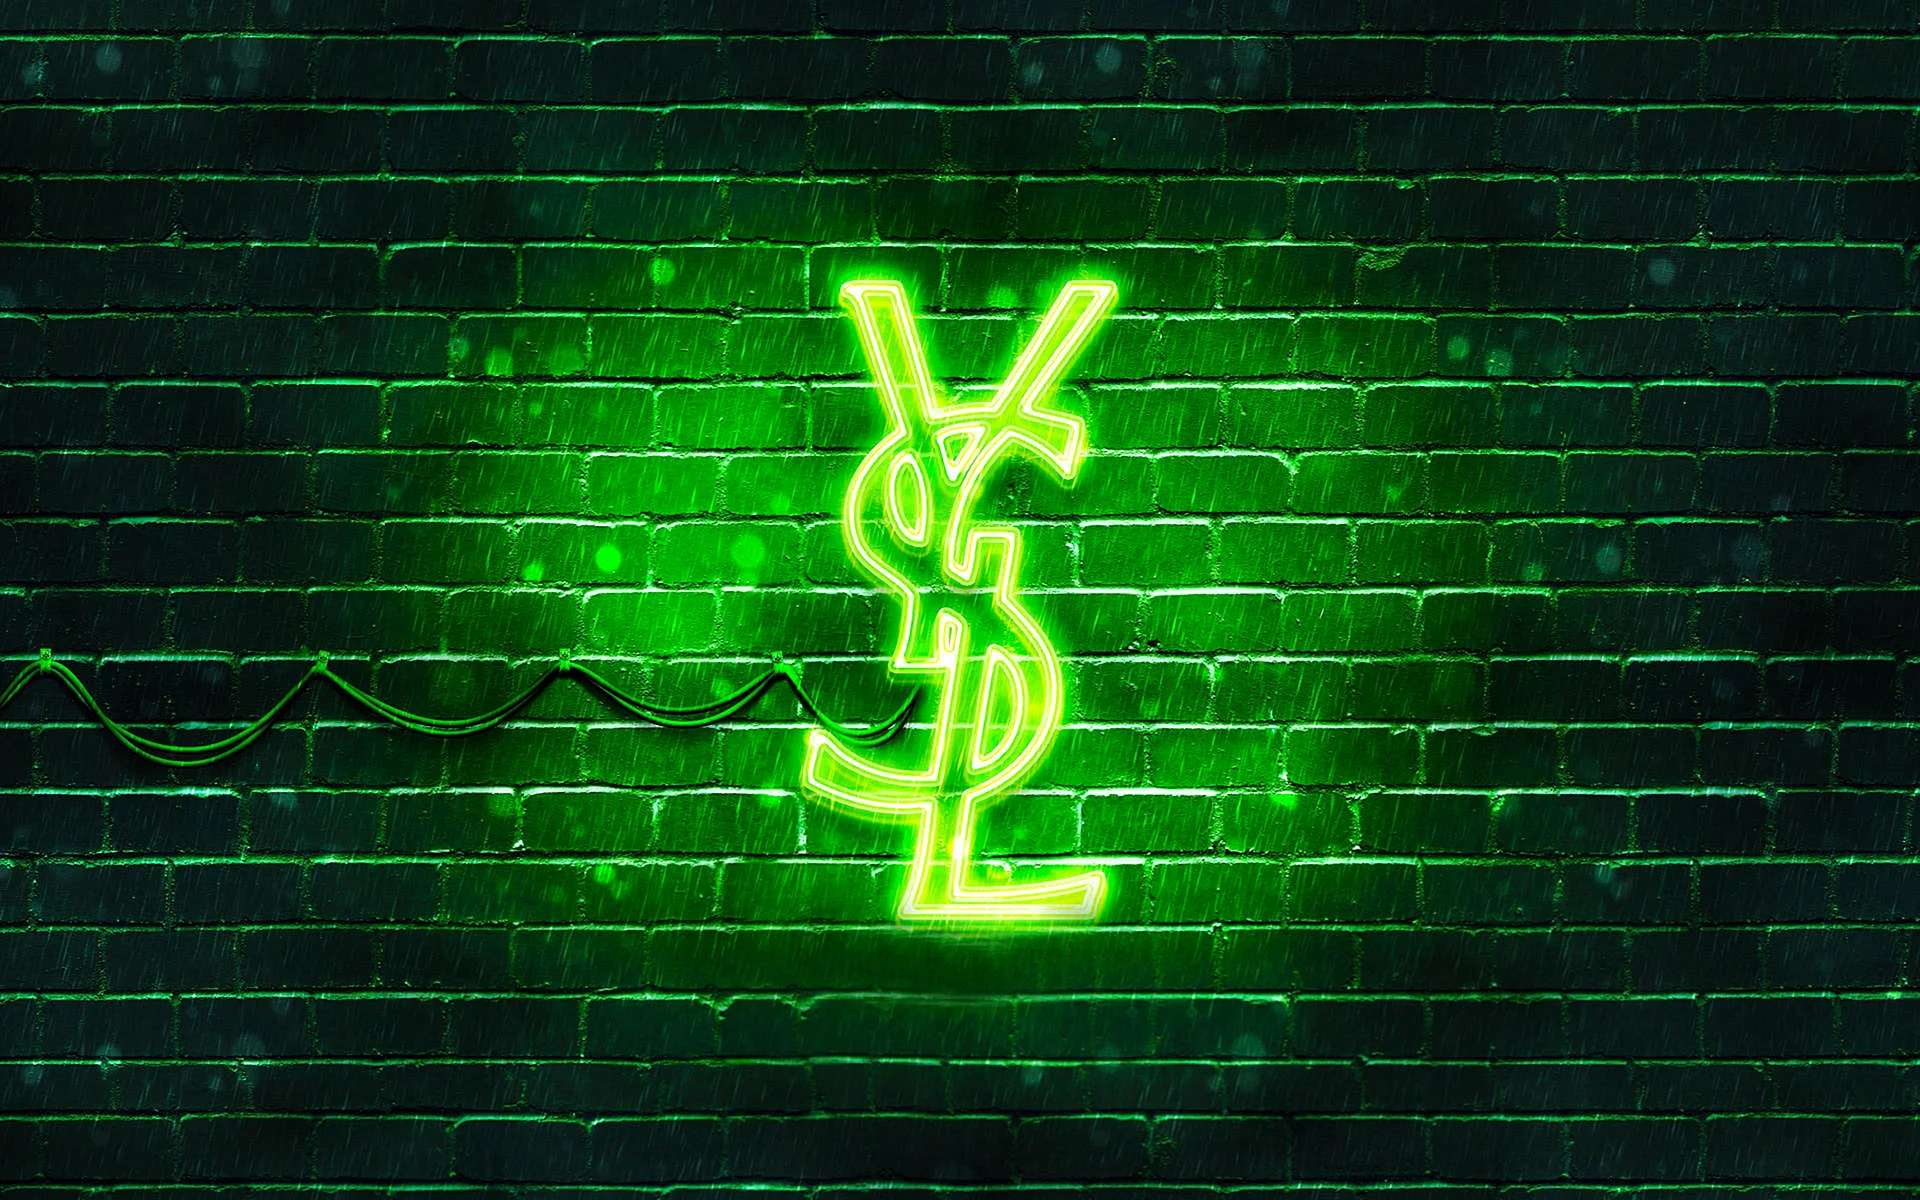 Yves Saint Laurent Logo Wallpaper